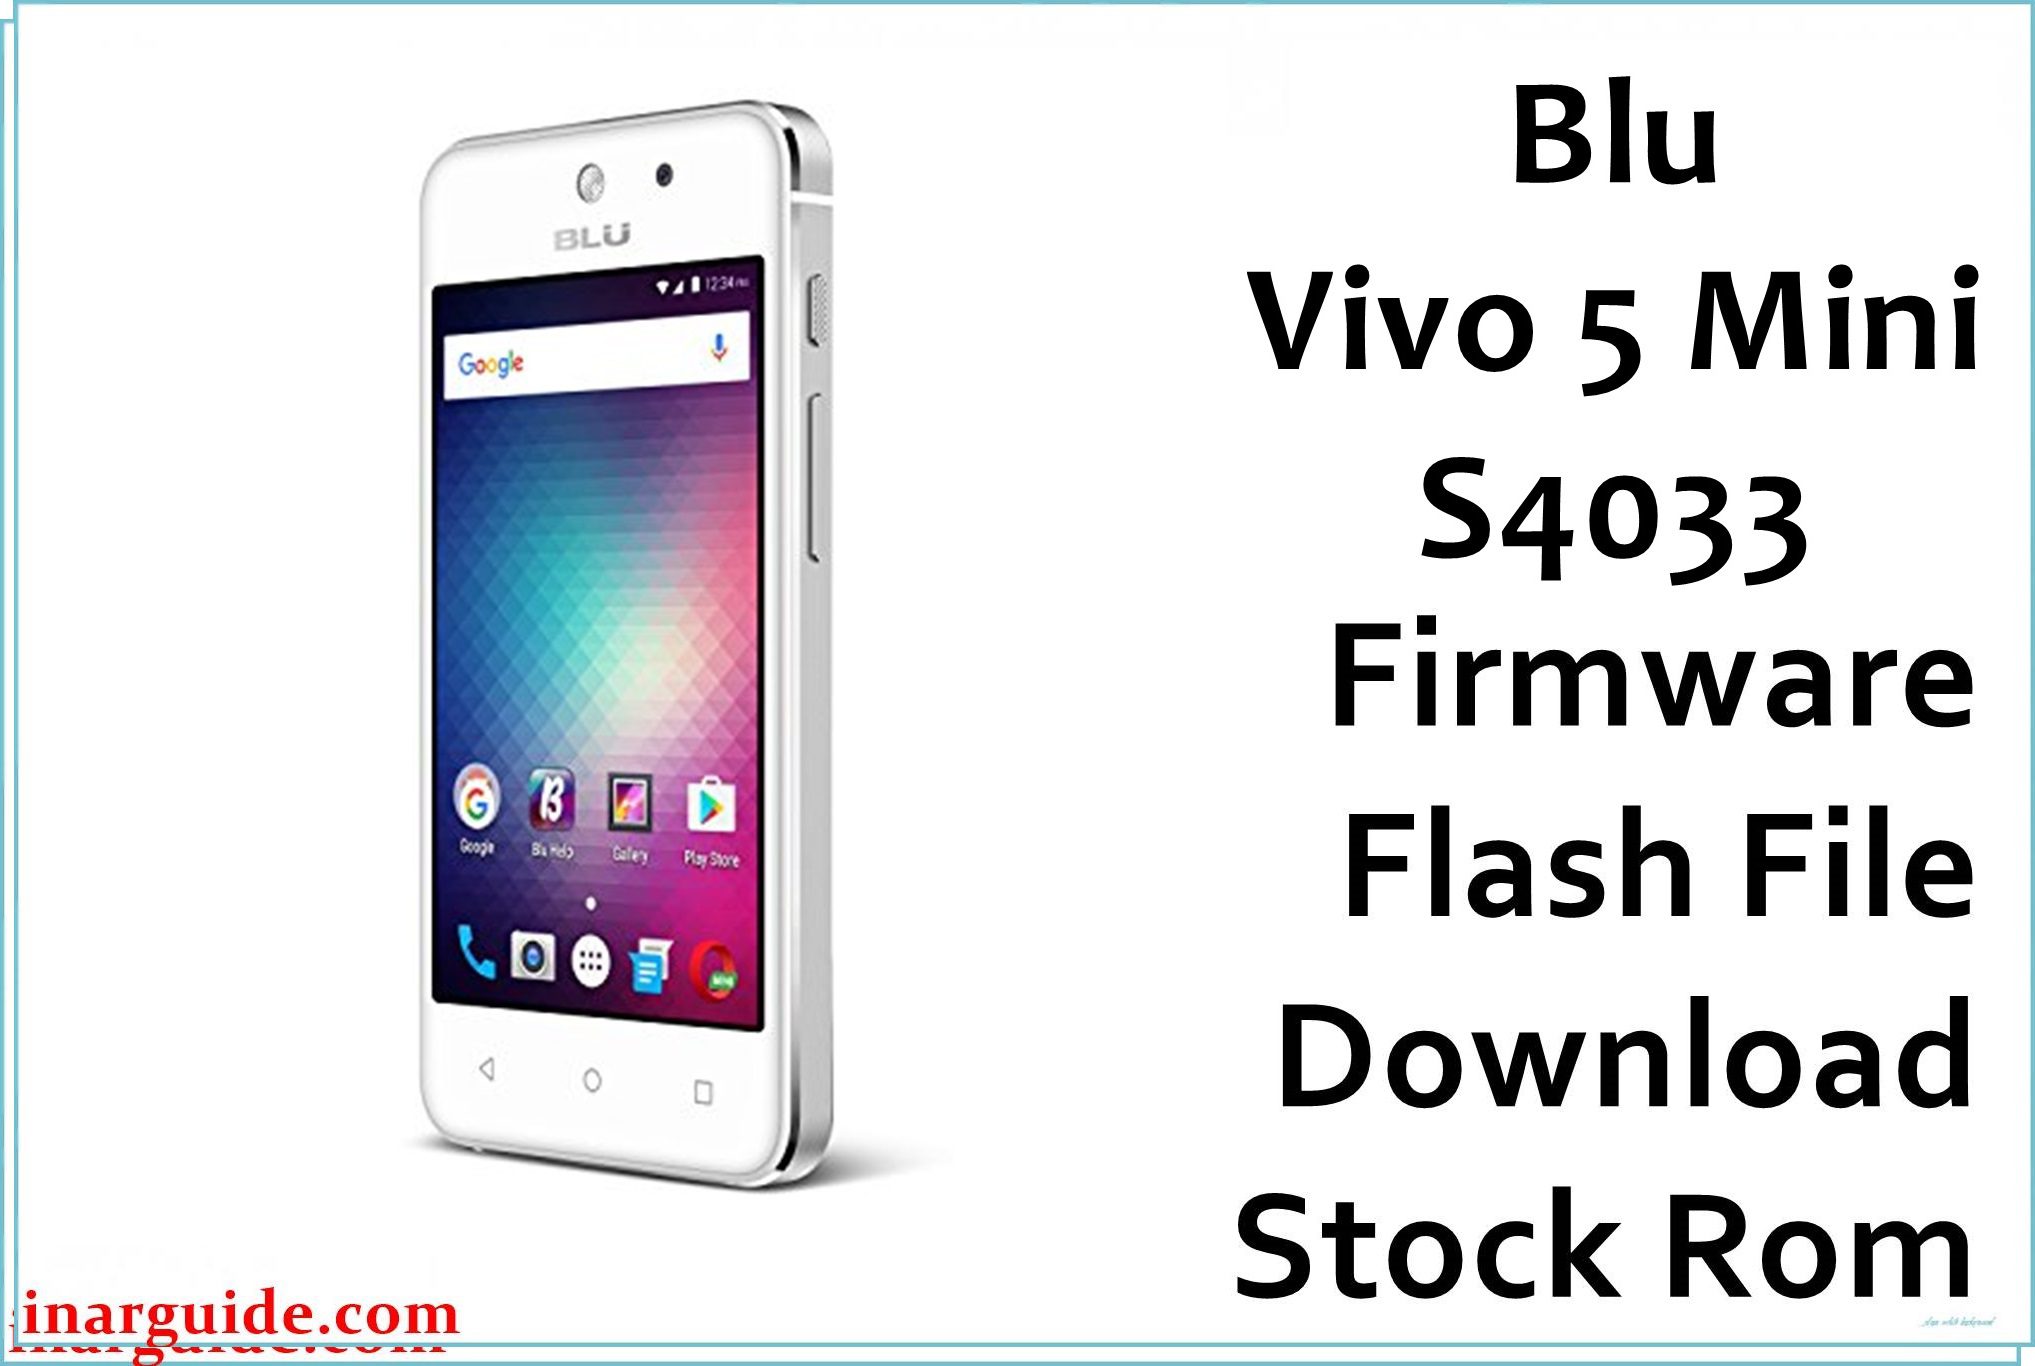 Blu Vivo 5 Mini S4033